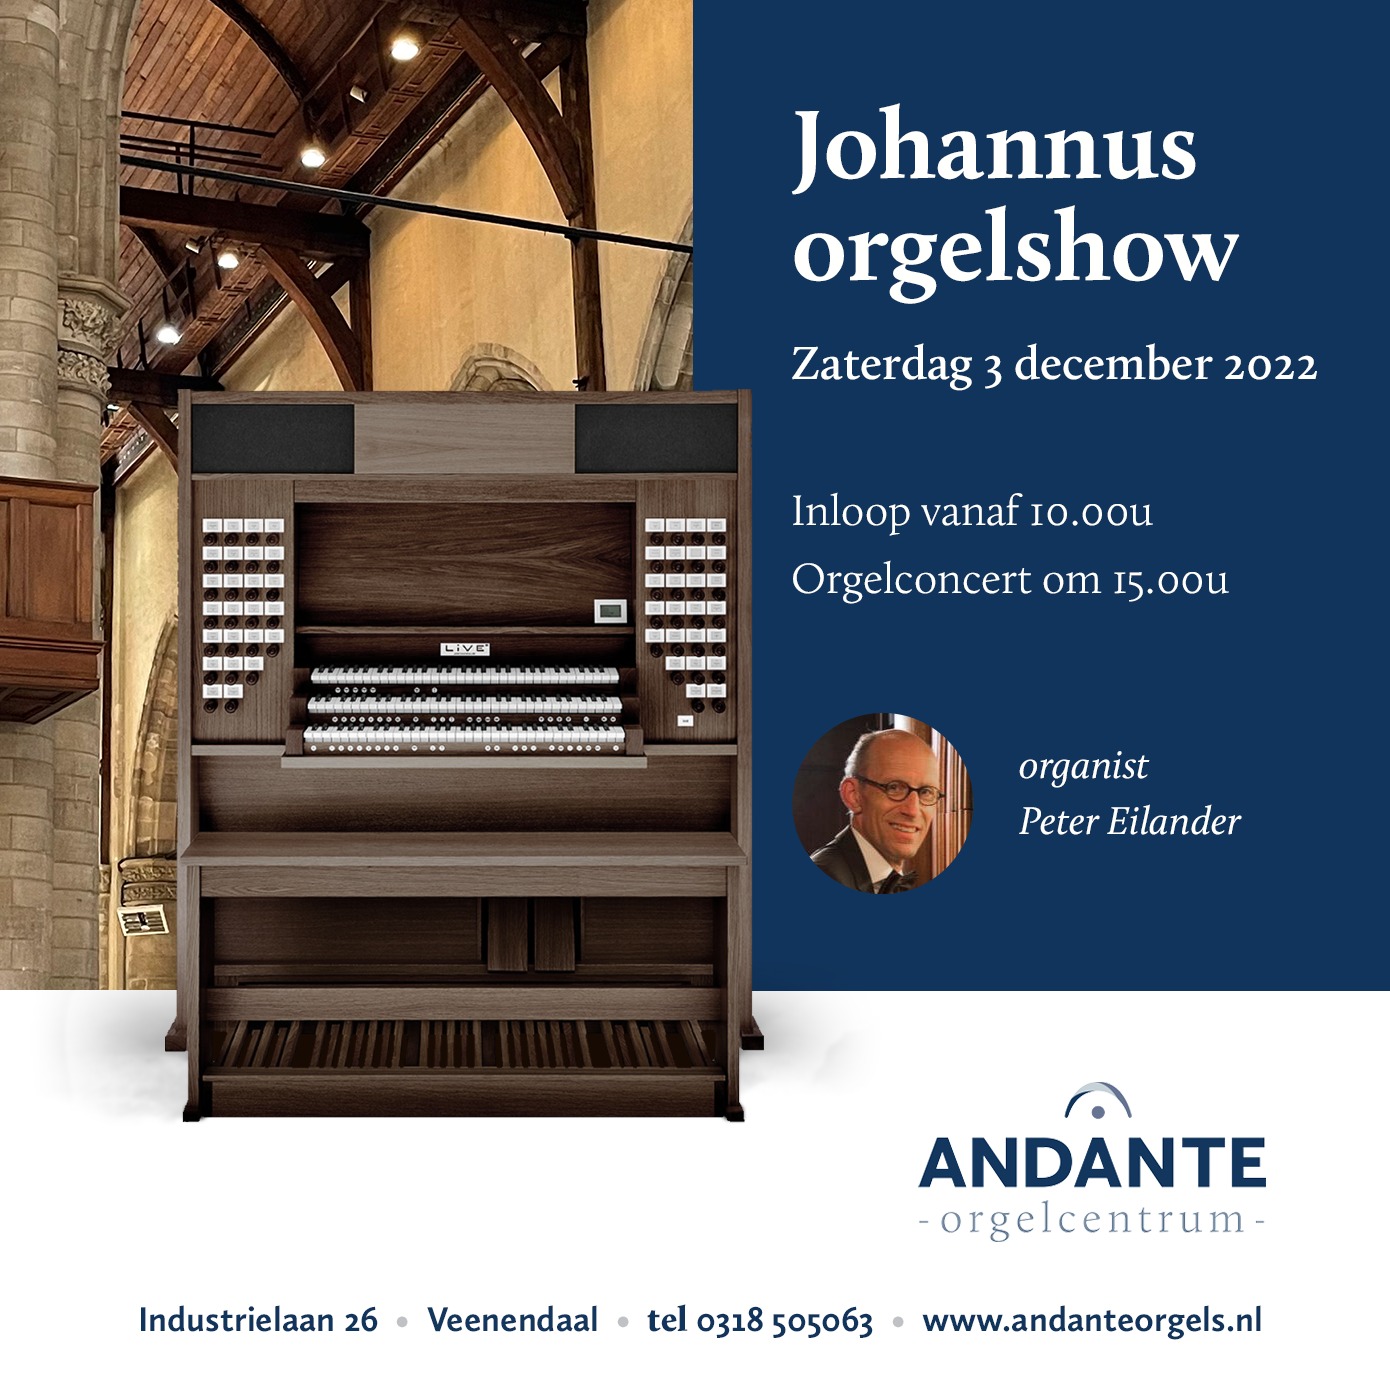 Johannus orgelshow